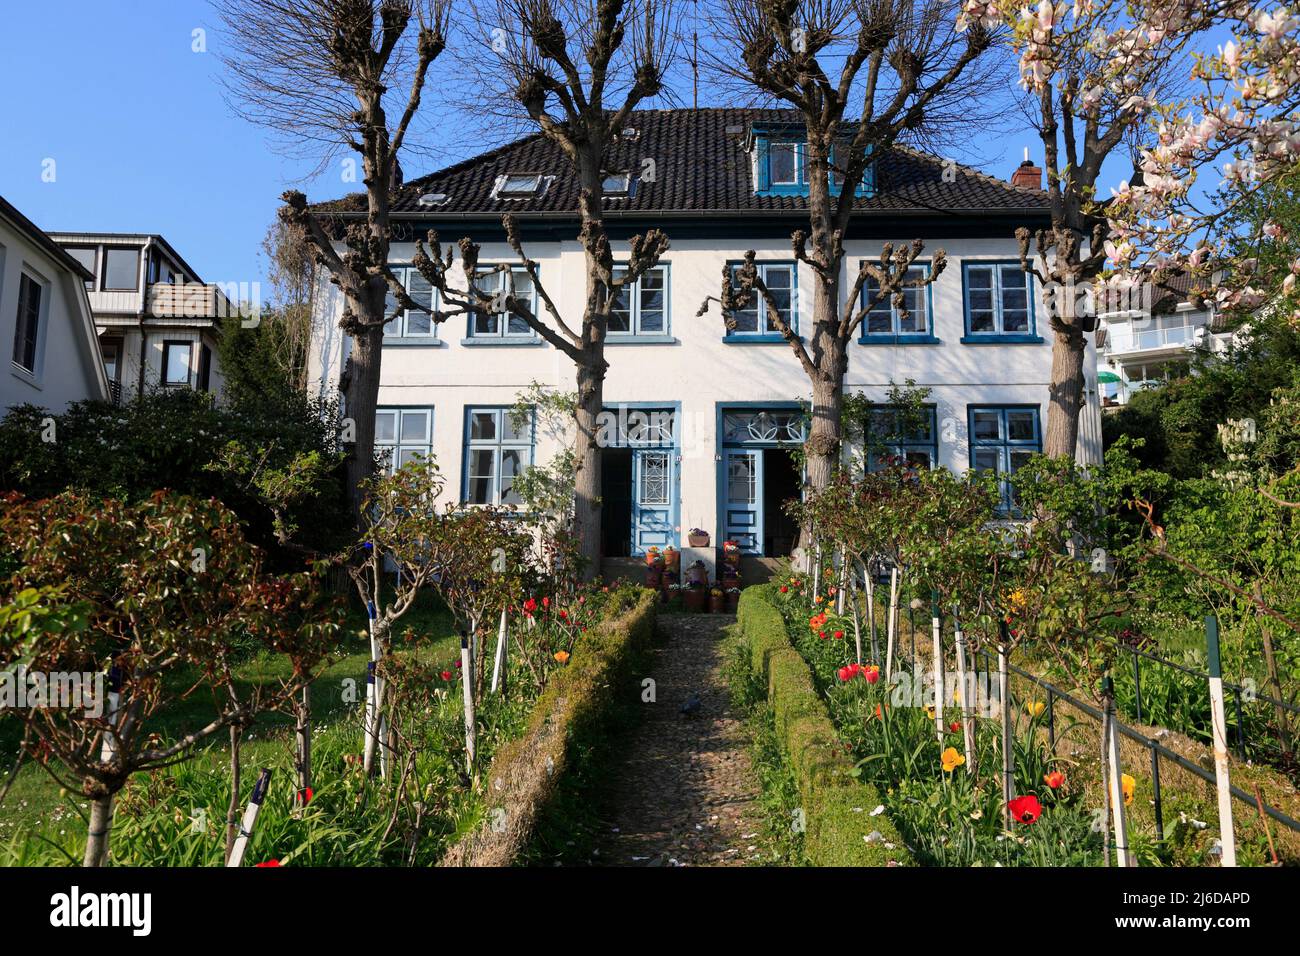 Blankenese, vecchia casa a Strandweg, Amburgo, Germania, Europa Foto Stock